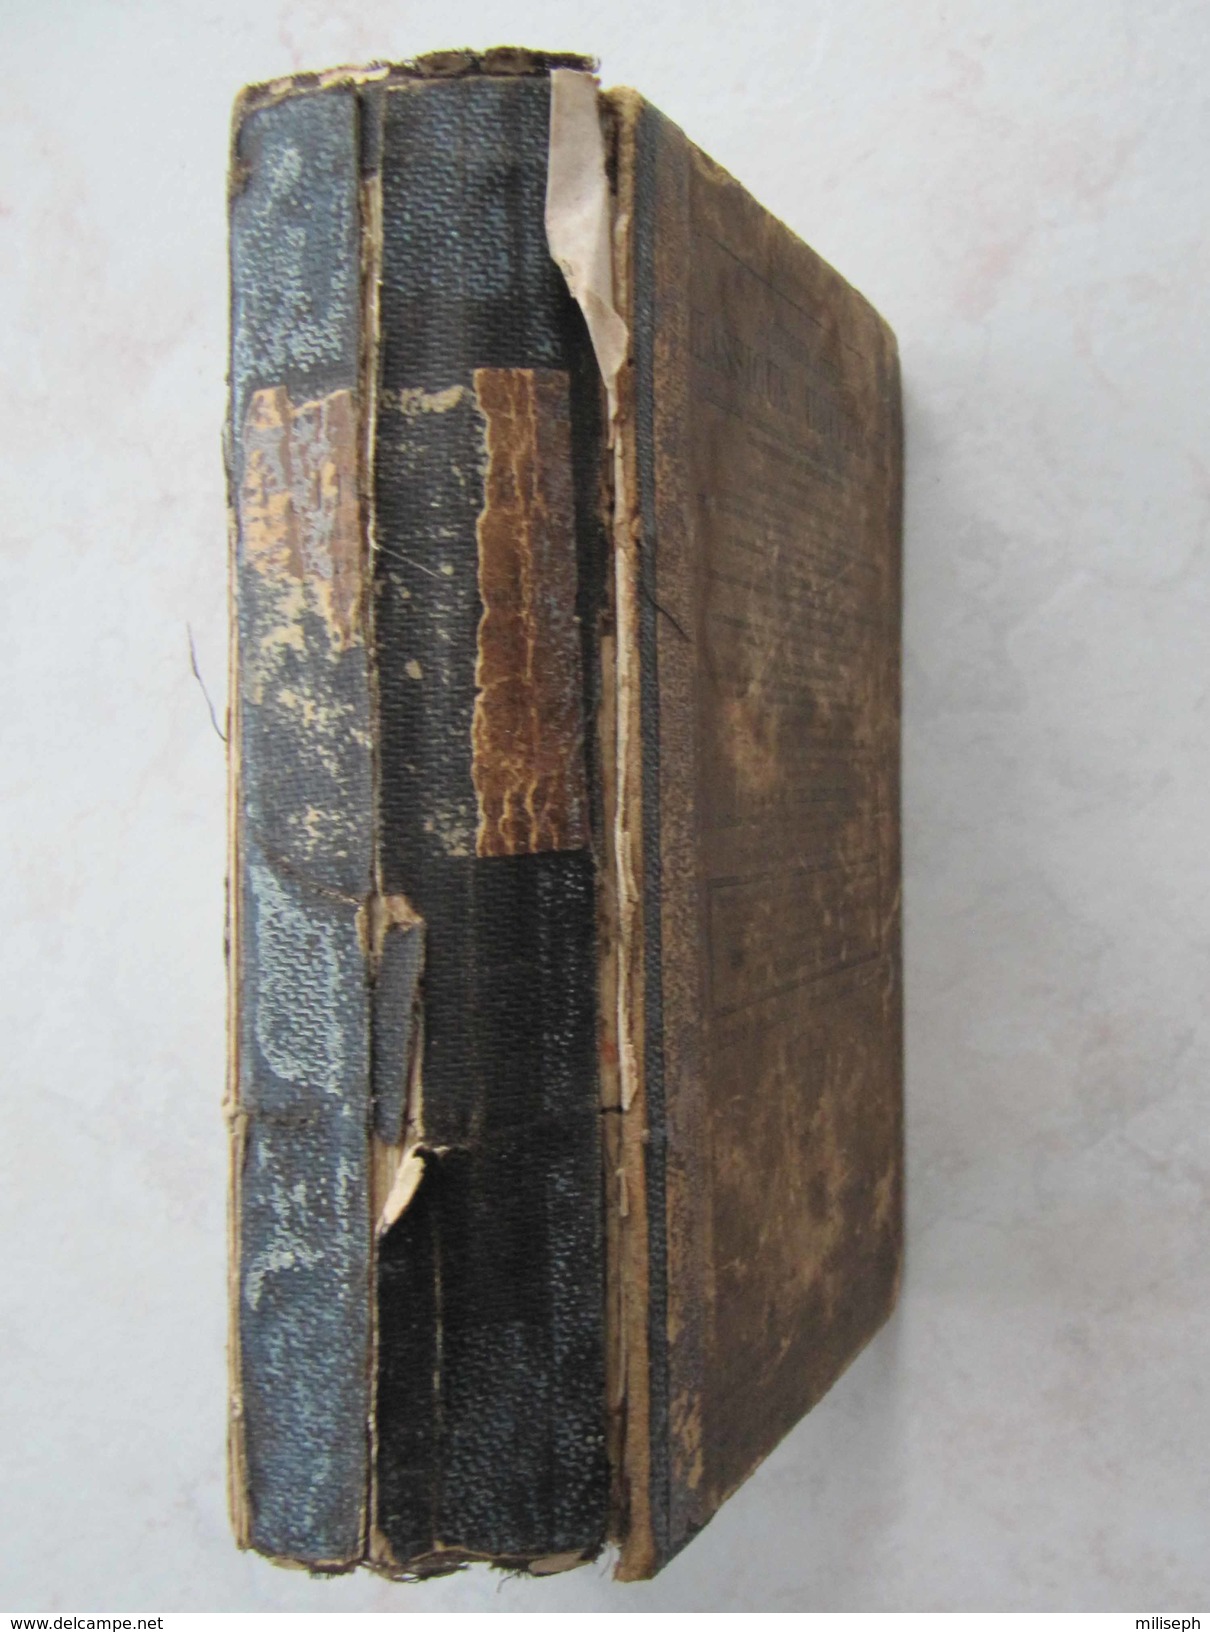 Livre Rare Et Ancien - DICTIONNAIRE Classique Universel Par BENARD Th.- Librairie Eugène Belin - 1872 - (4304) - Dictionaries